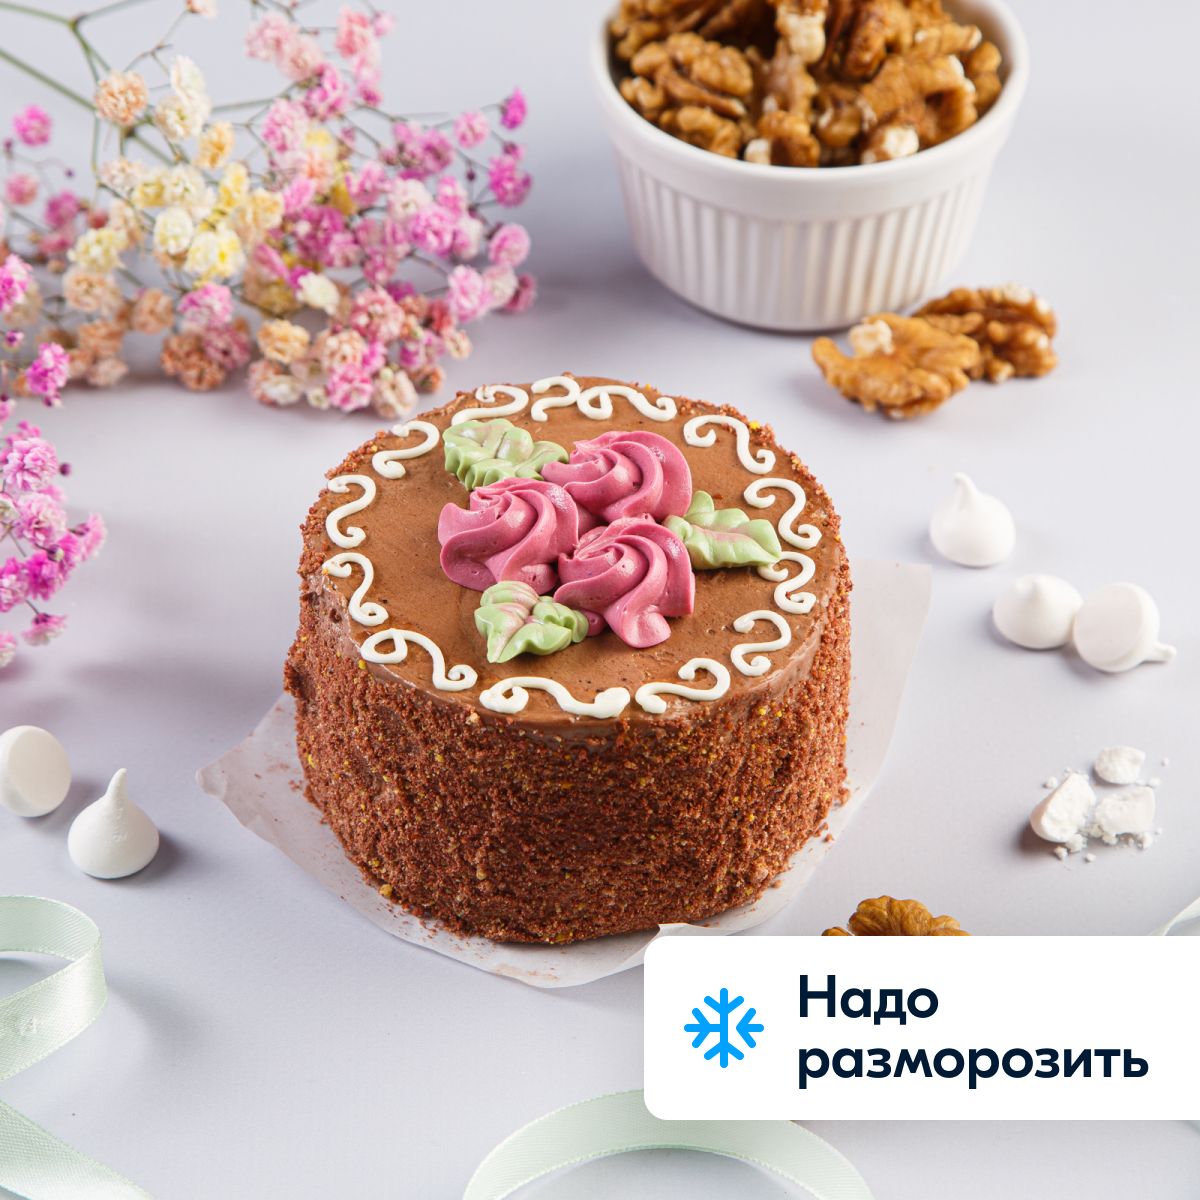 Авторские торты от шеф-кондитера Маловой Татьяны | Супермаркеты «Золотой ключик»